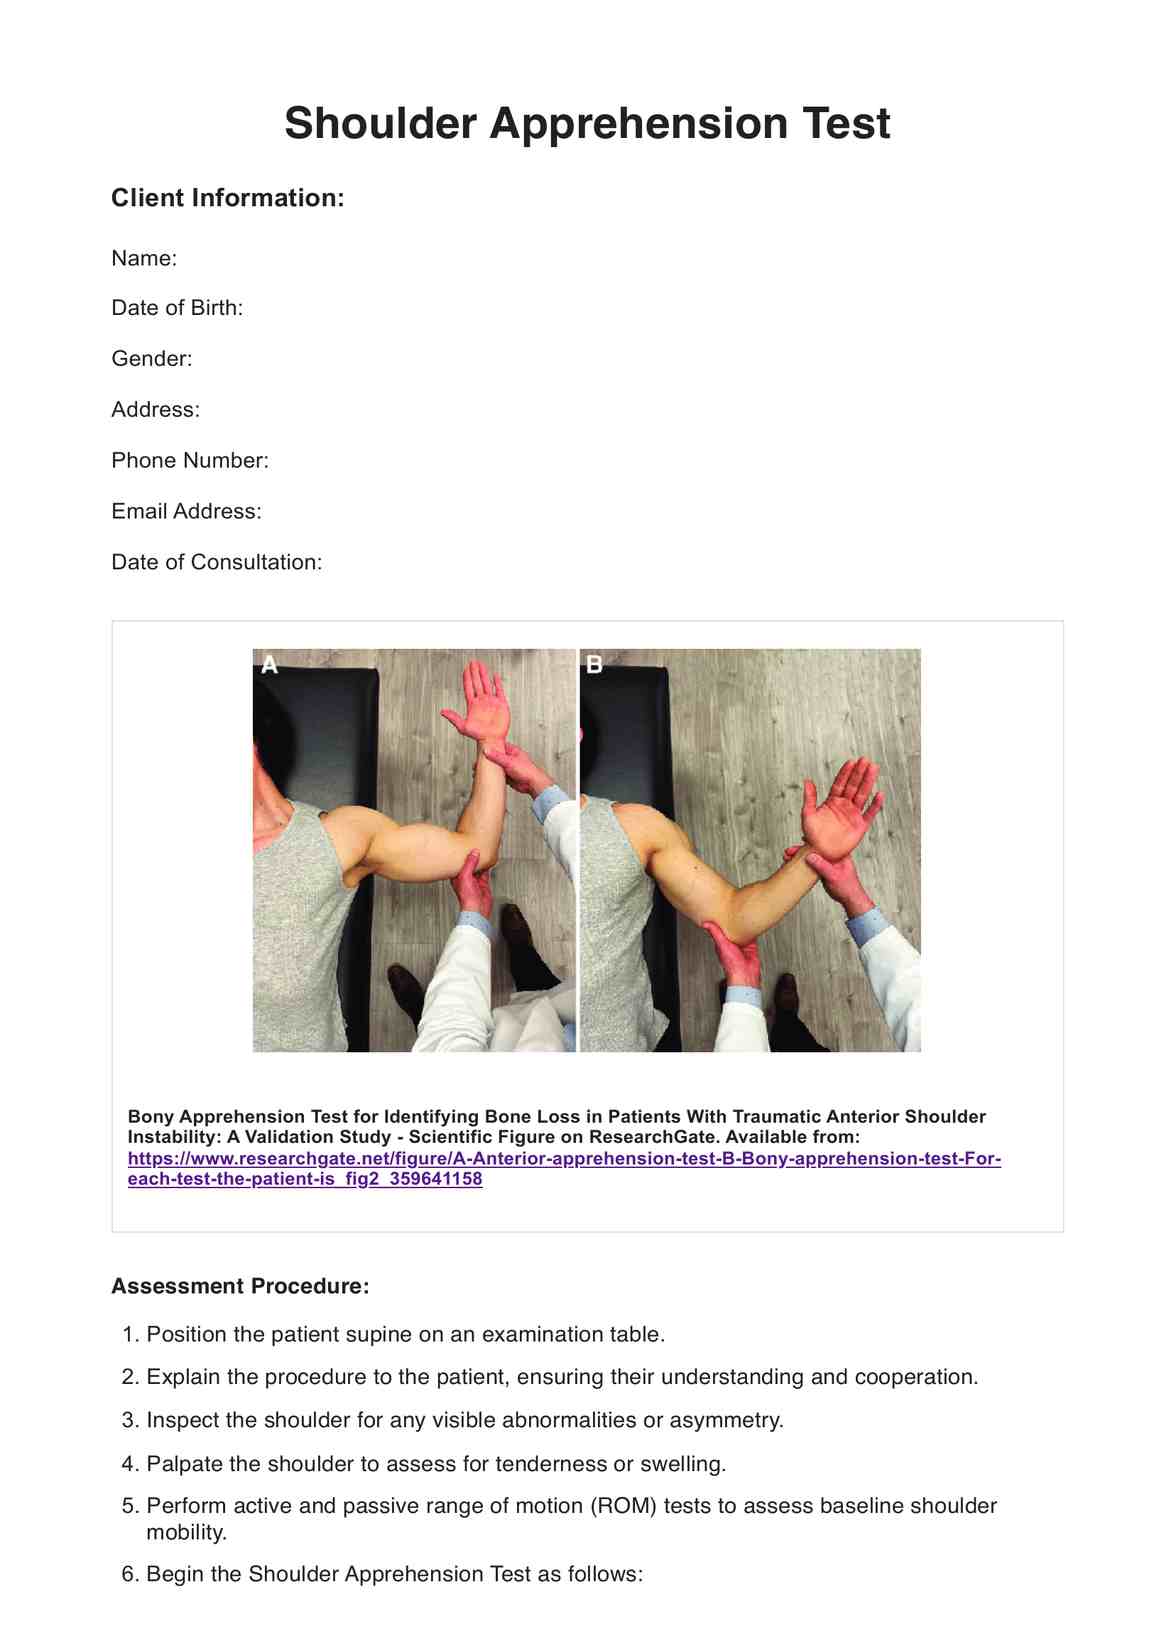 Shoulder Apprehension Test PDF Example